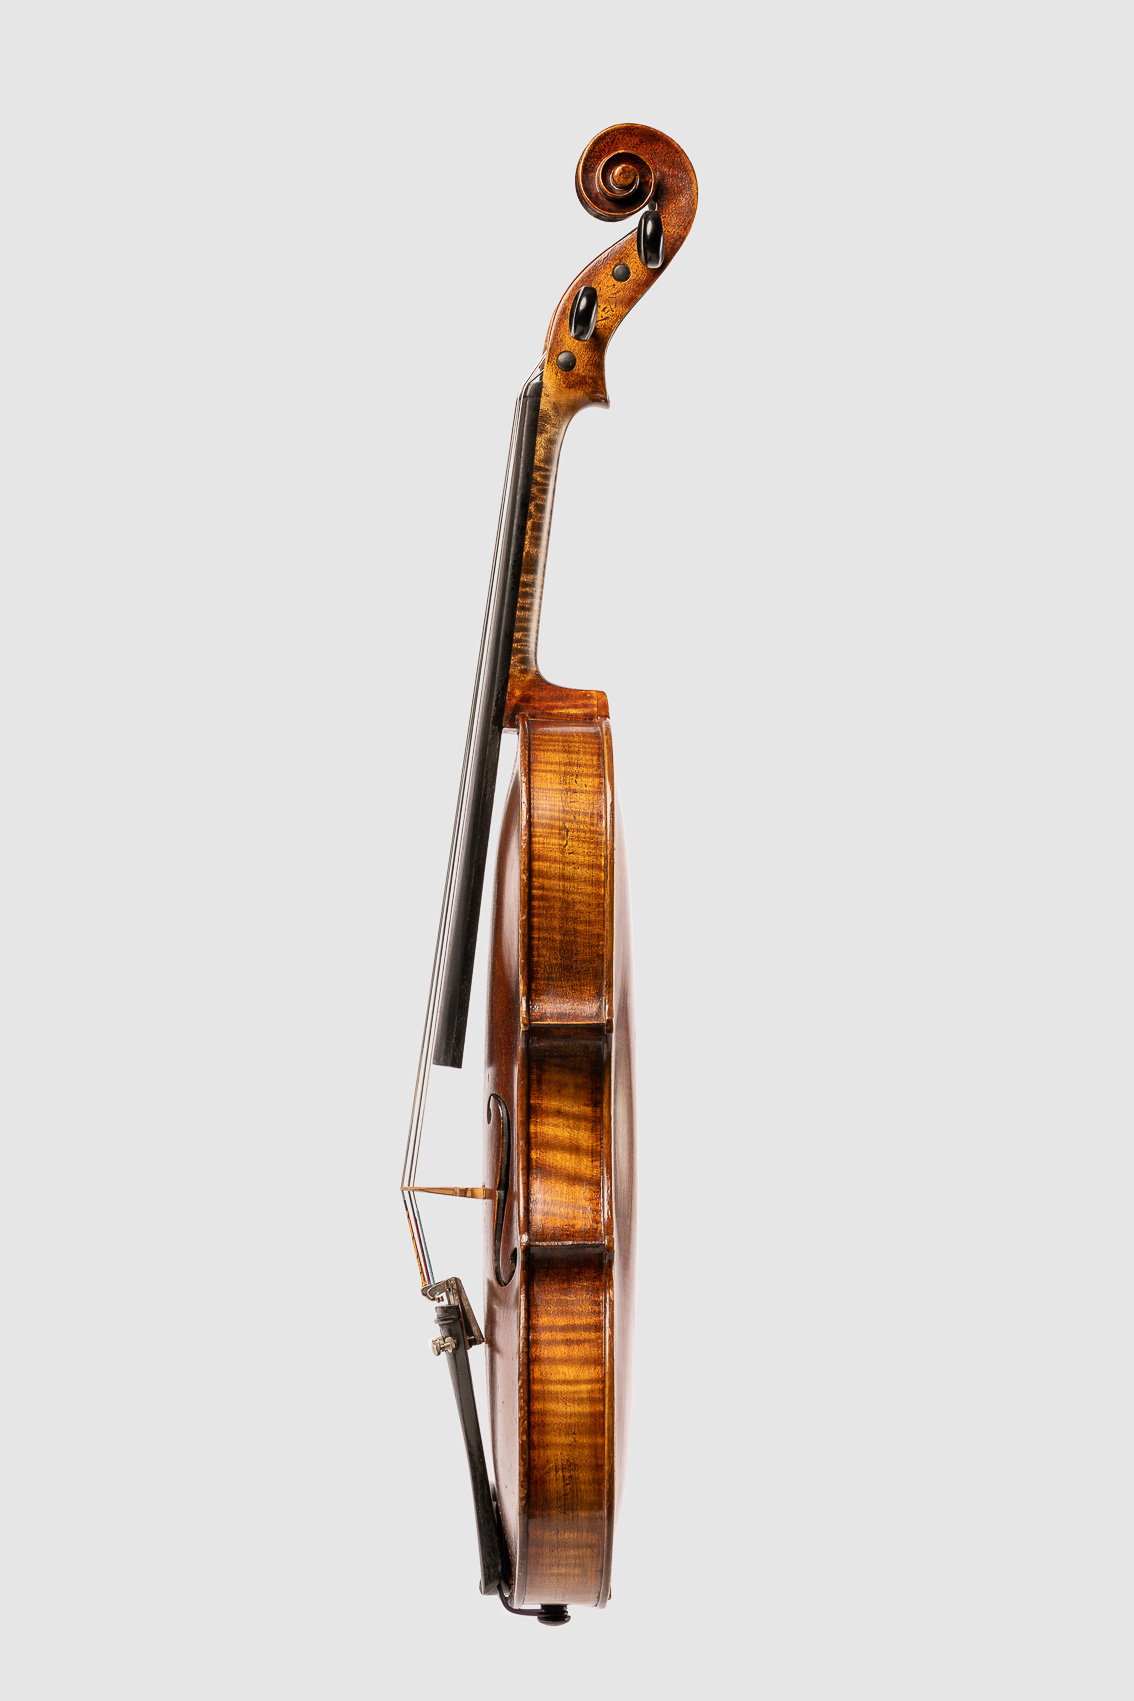 Geige bzw. Bratsche, Streichinstrumentes von der Seite. Freisteller, Packshoot.